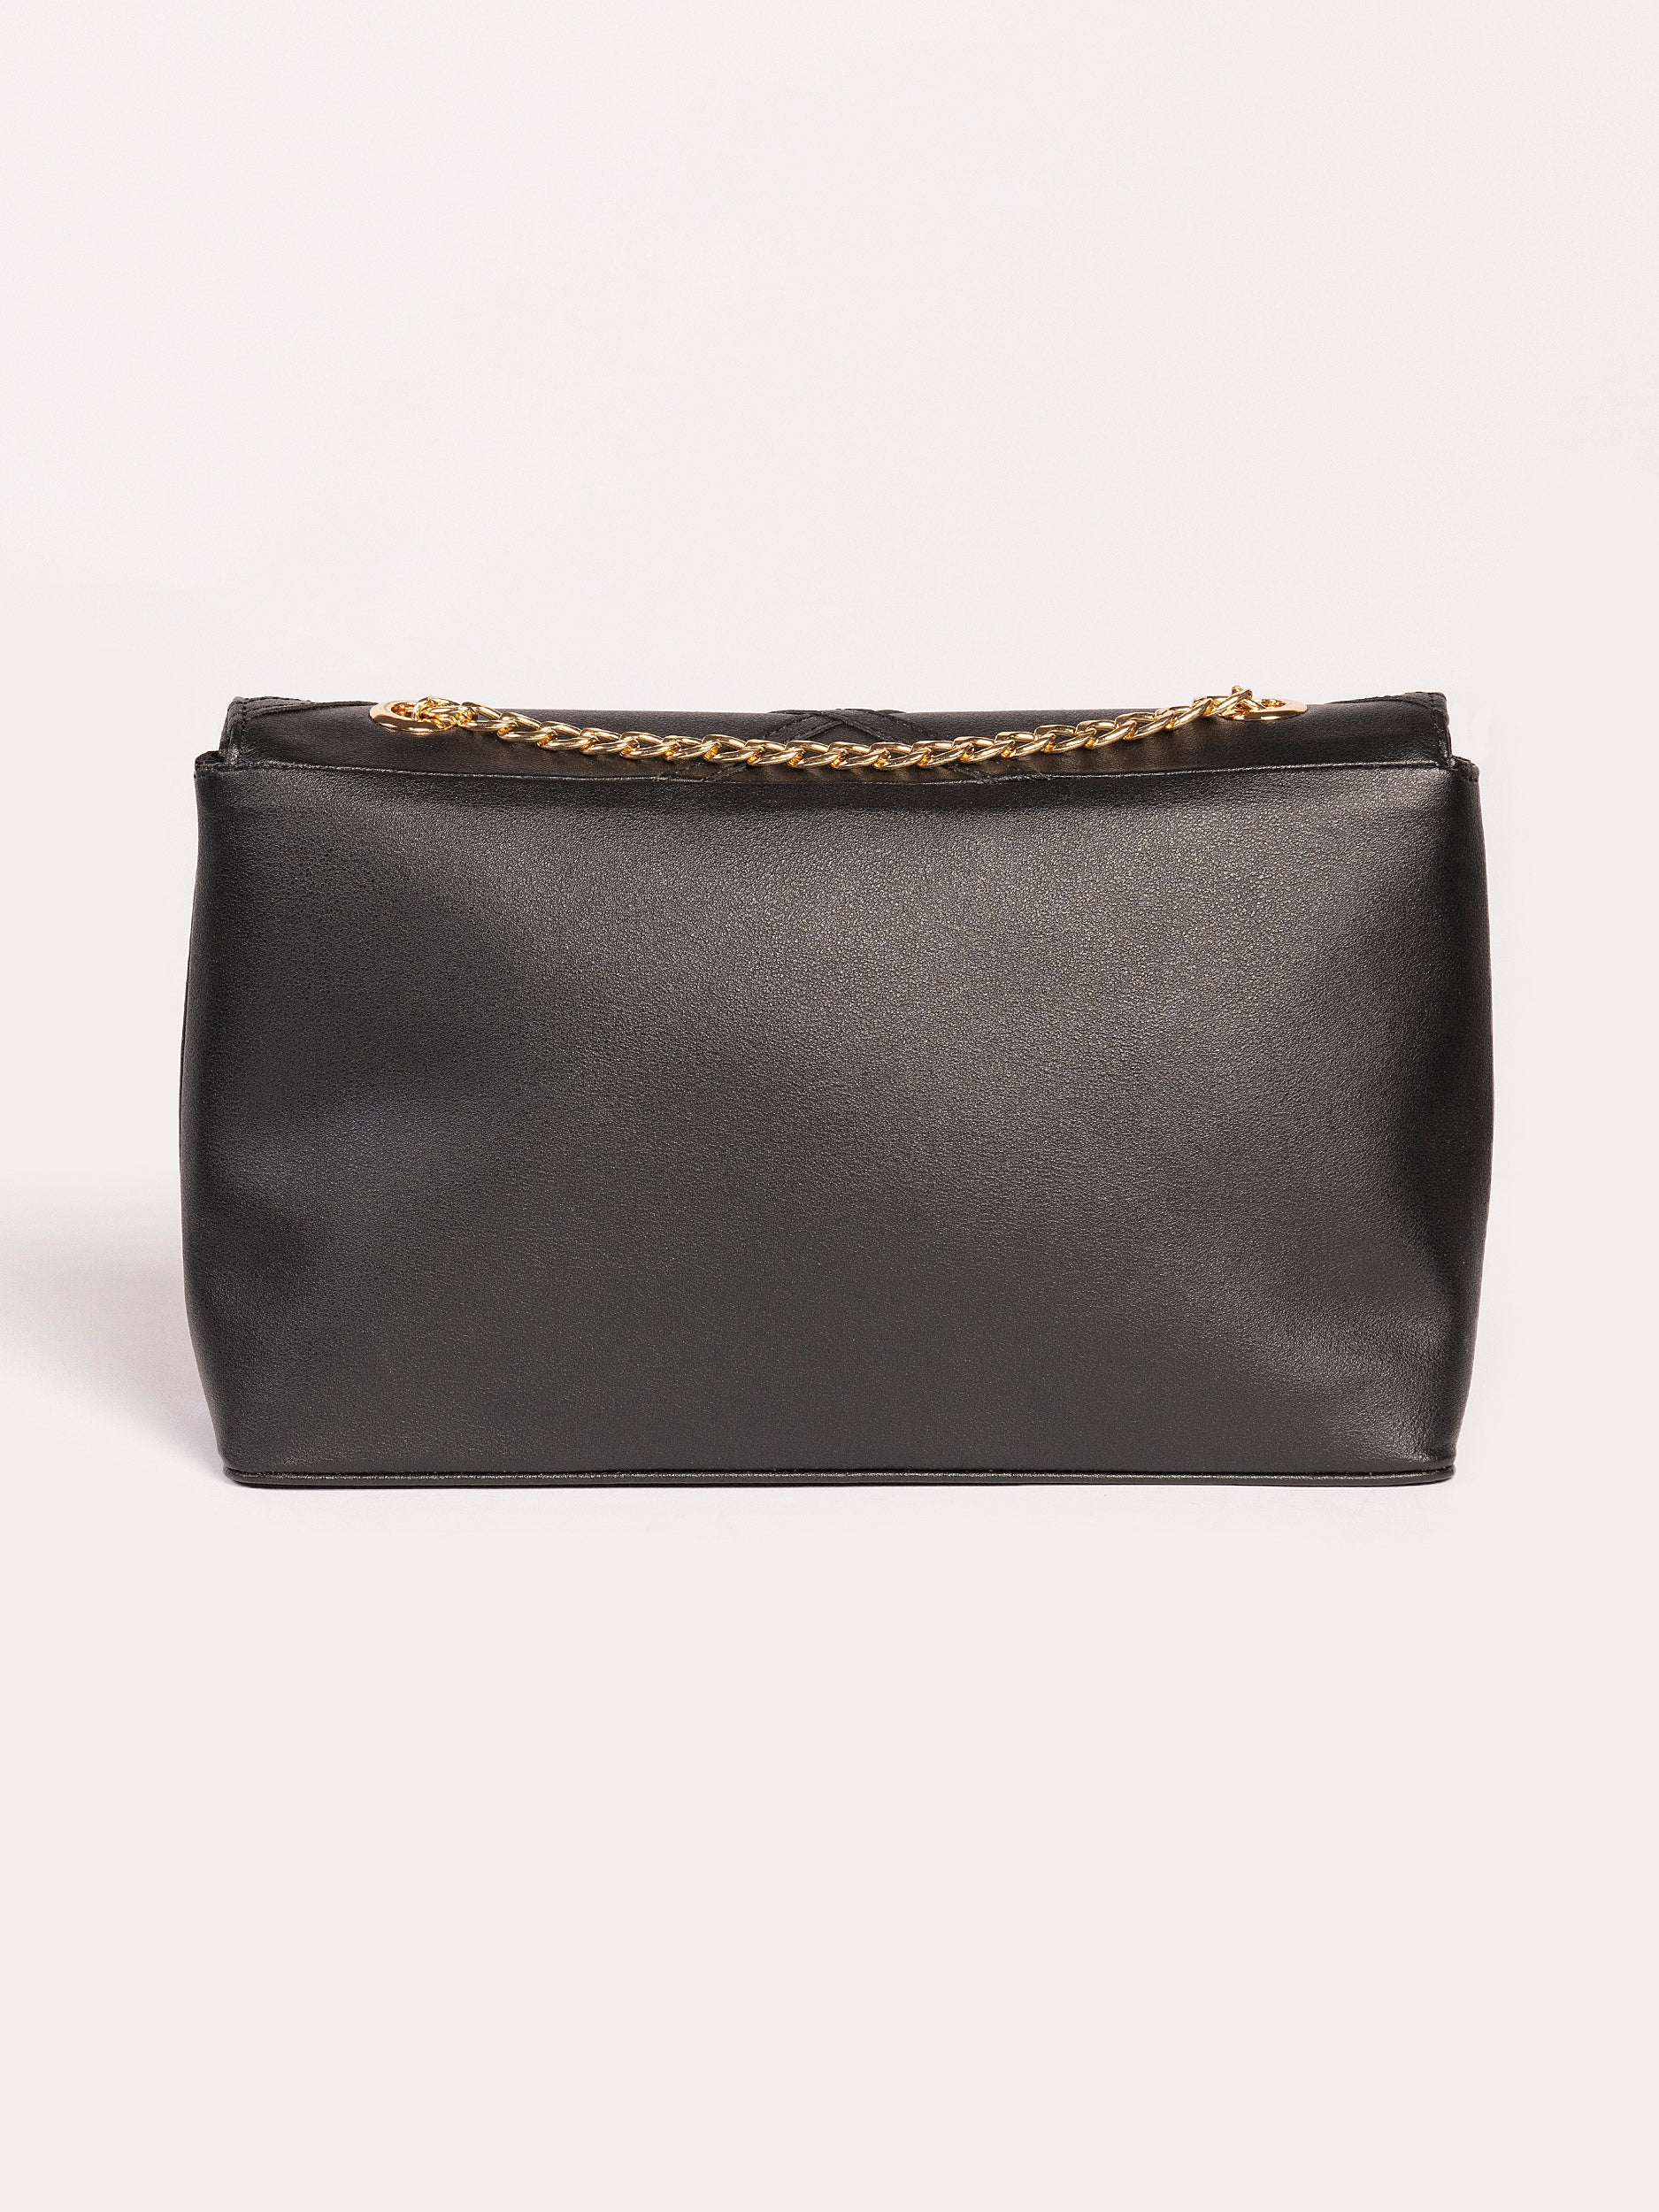 thread-detailing-handbag